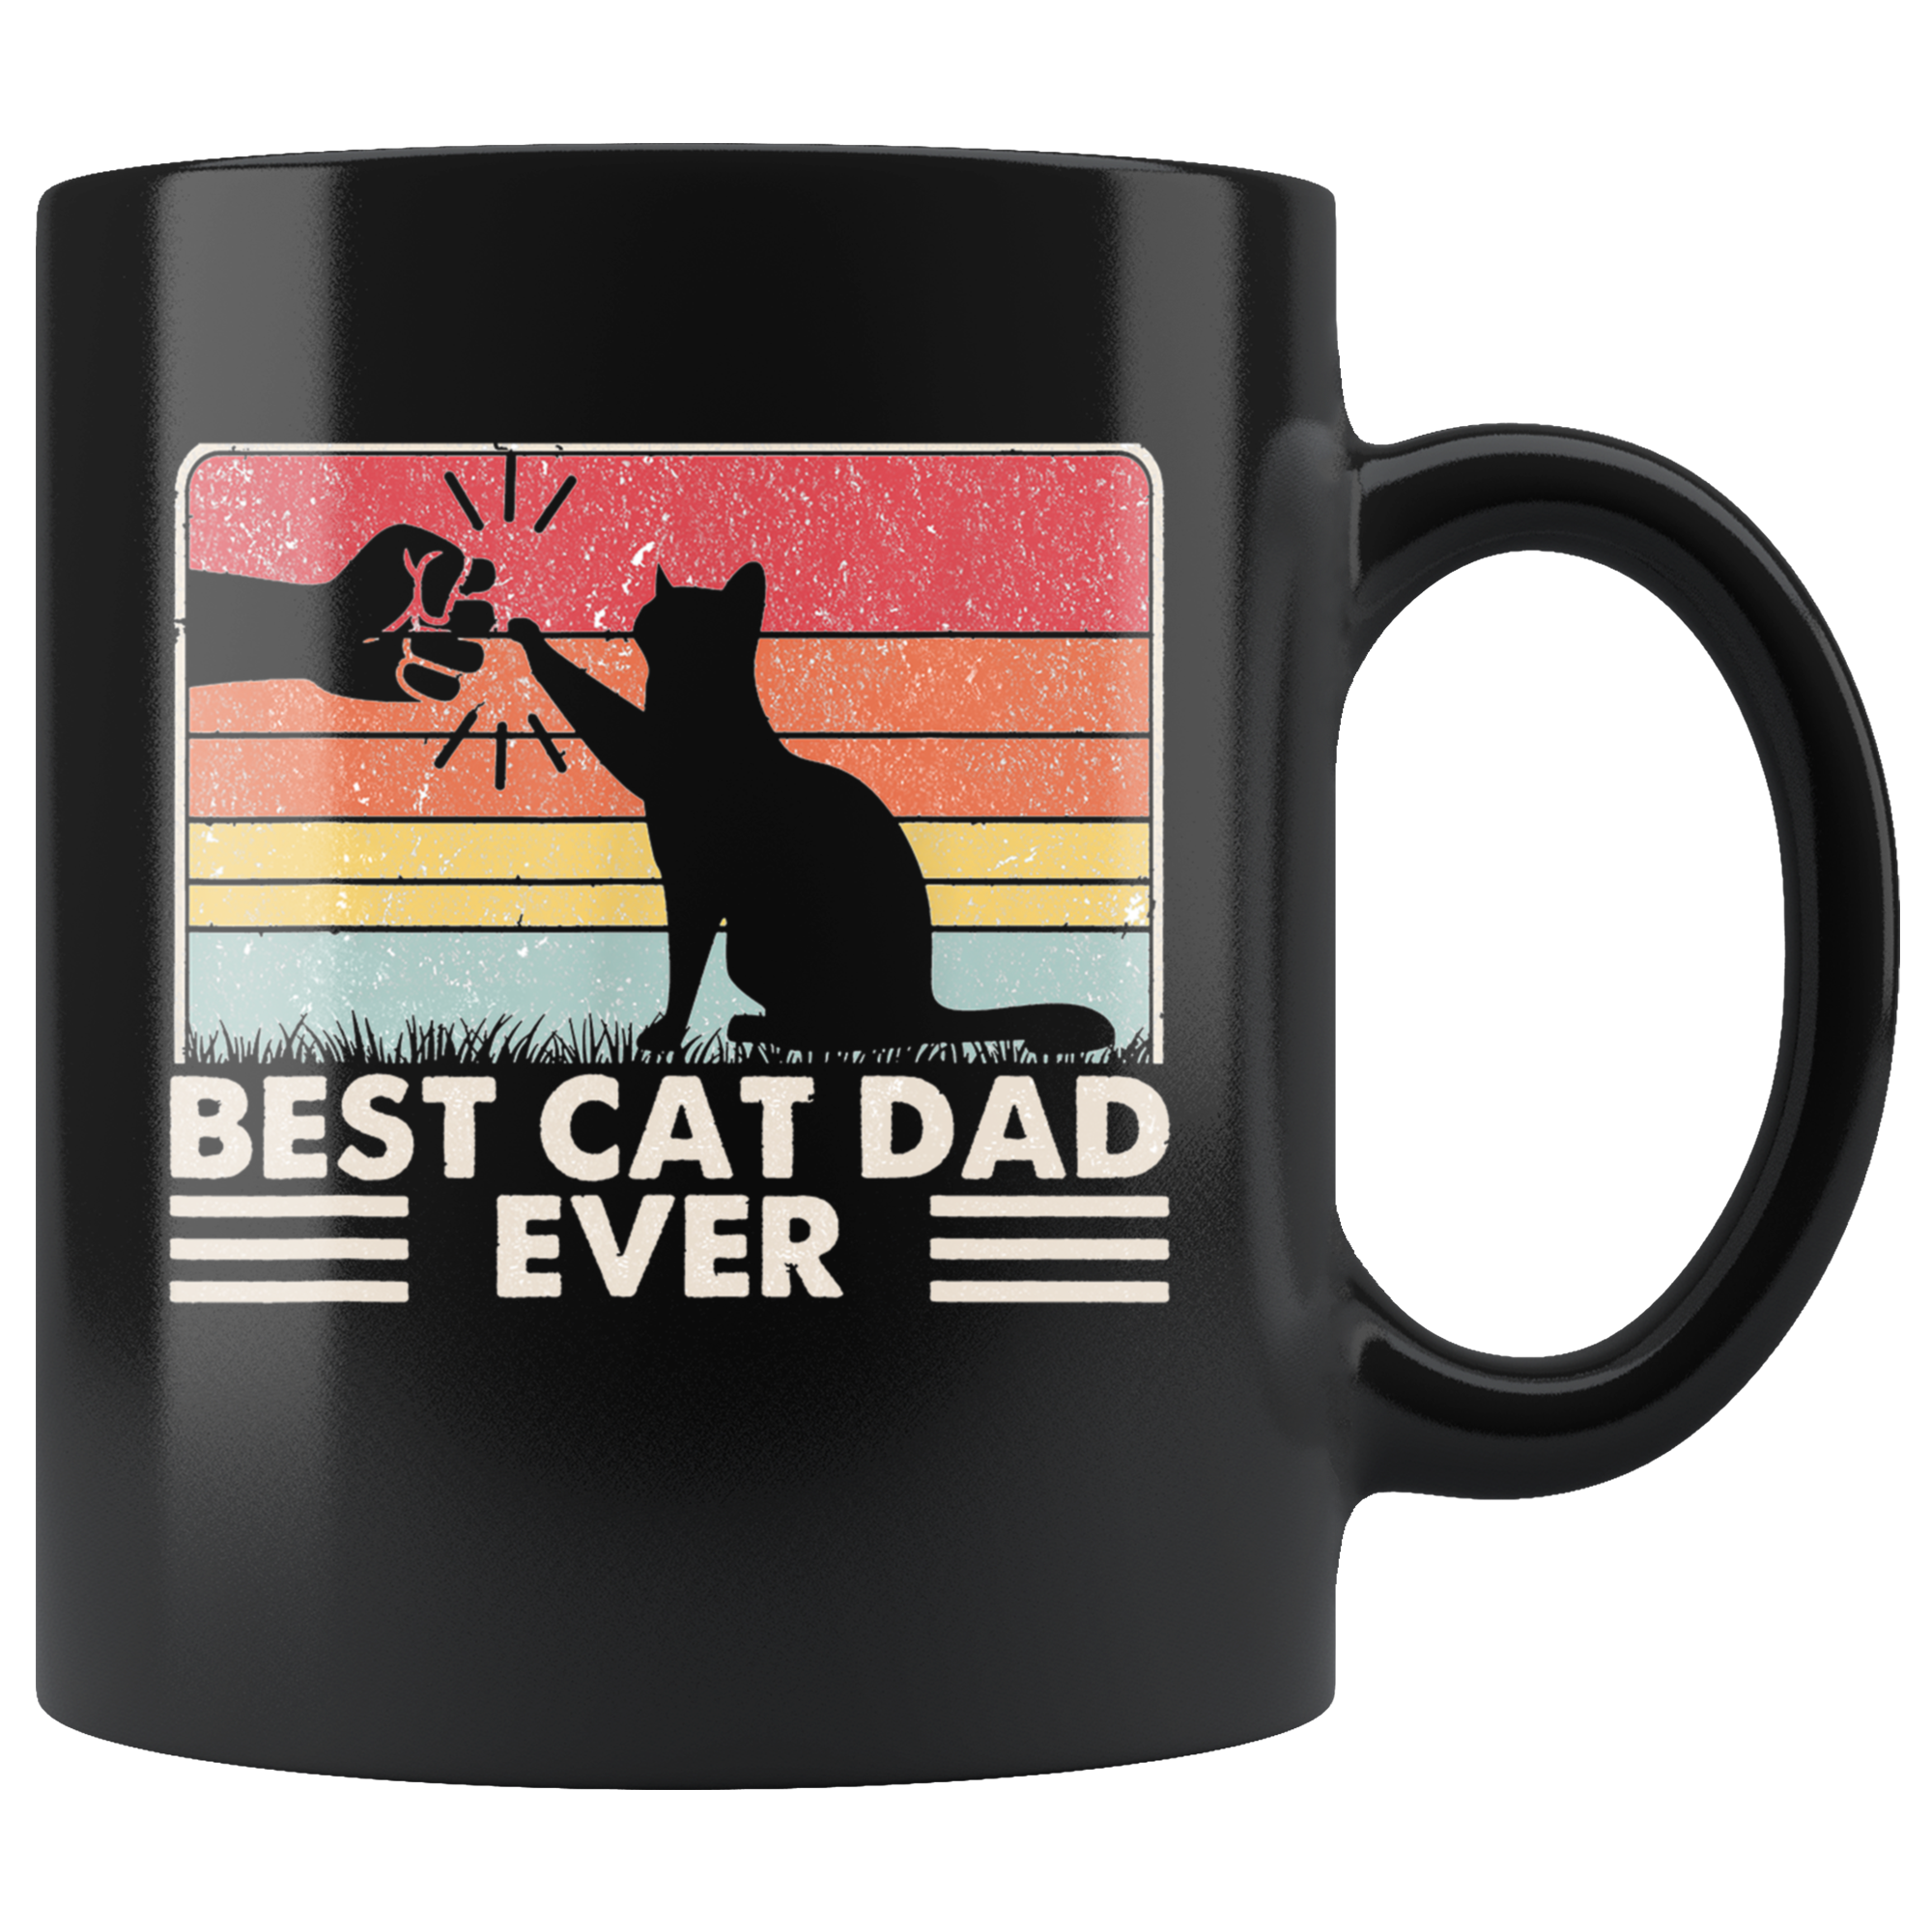 Best Cat Dad Ever Mug 